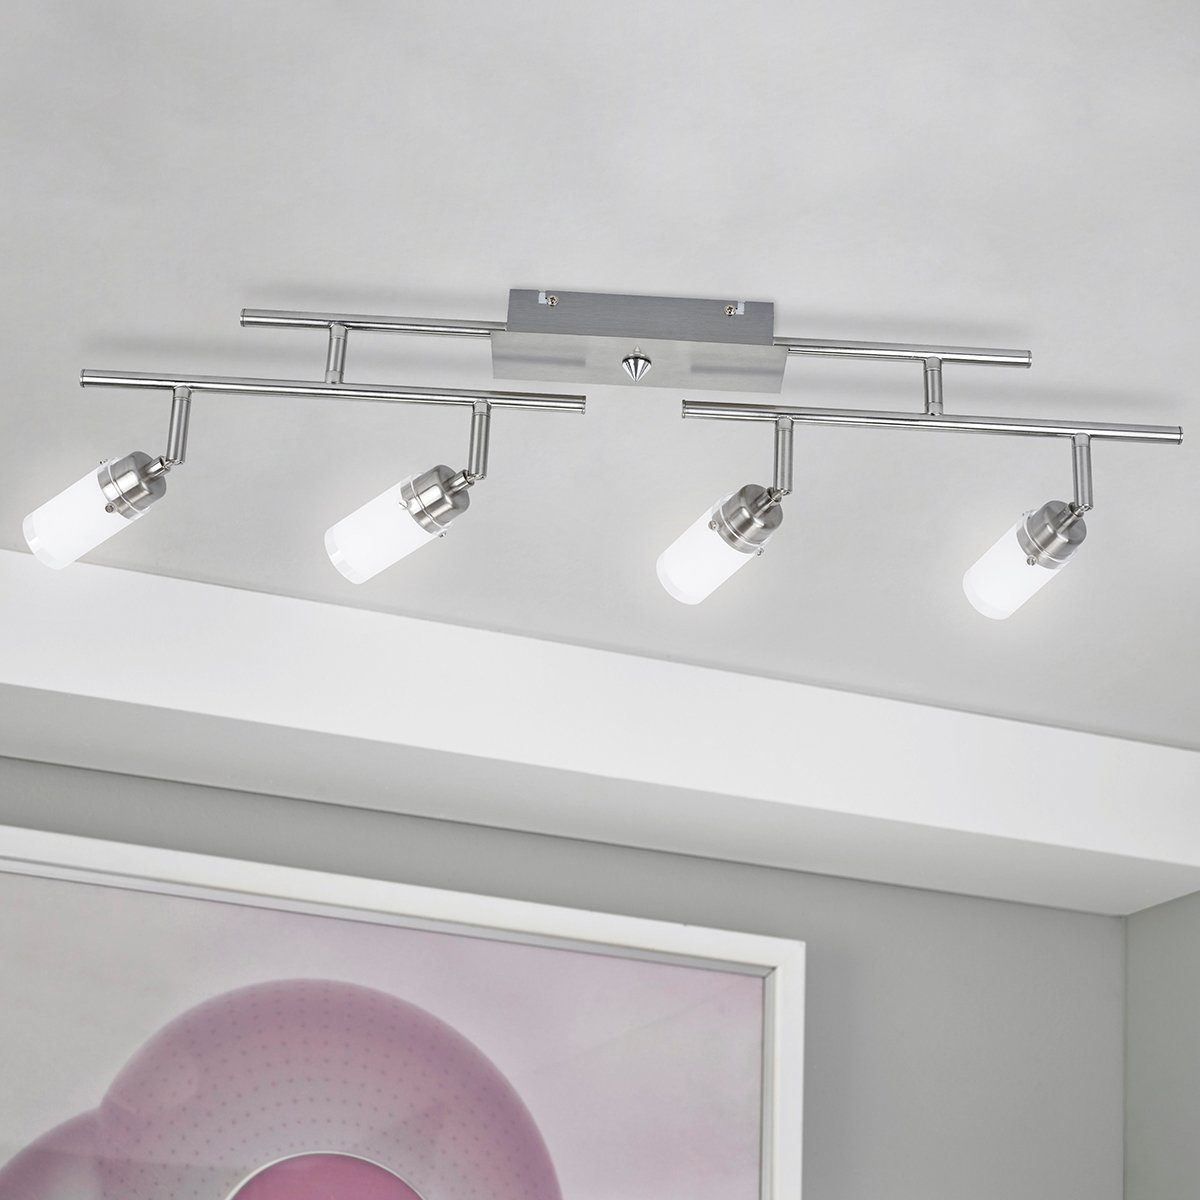 MeLiTec LED Deckenleuchte D83, Design, LED, Deckenstrahler, Deckenlampe, Lampe Decken, Beleuchtung, warmweiß, Wohnzimmer